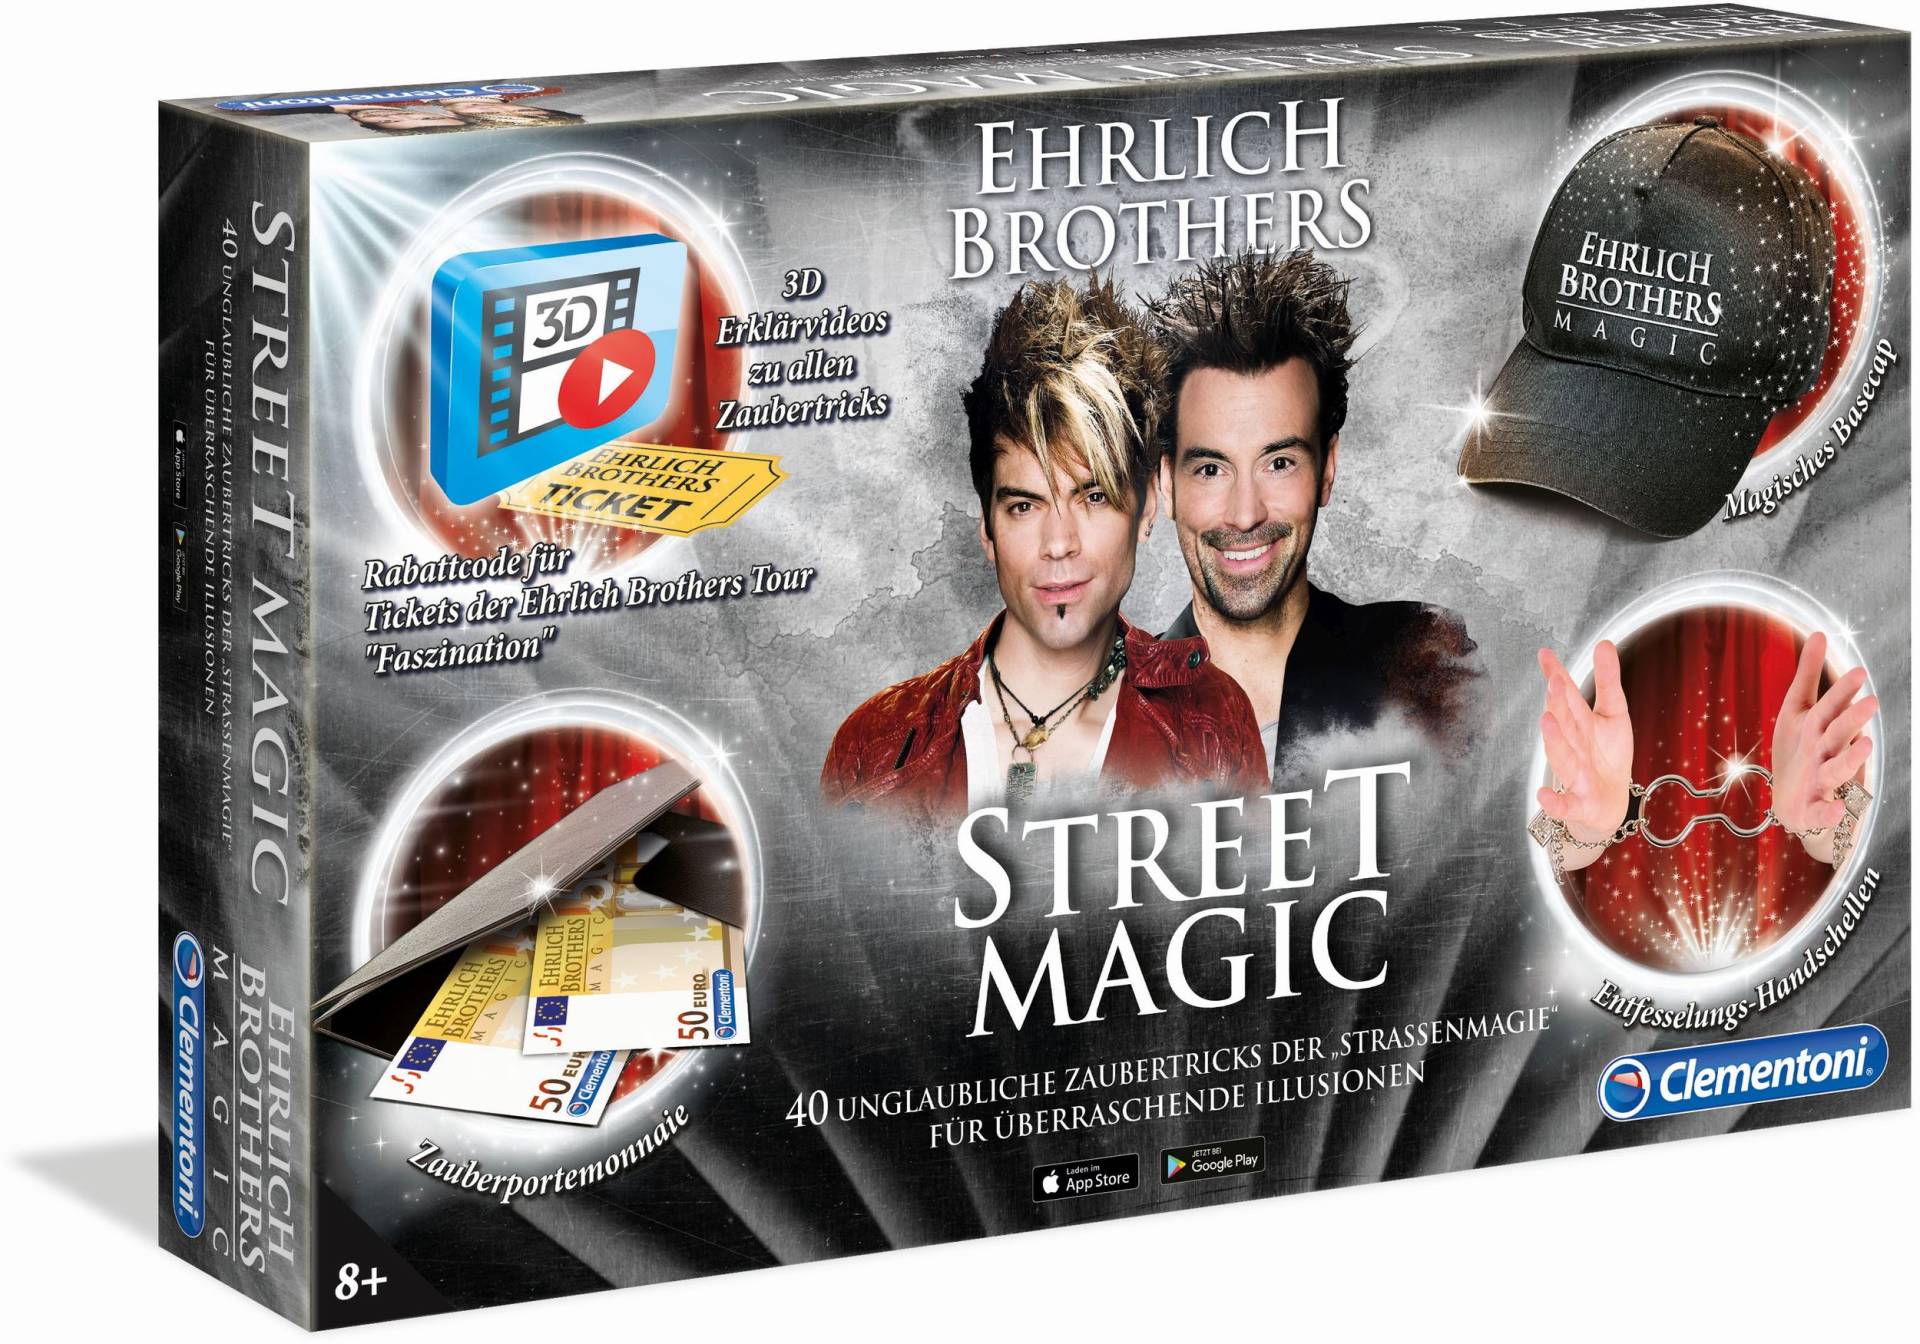 Ehrlich Brothers Street Magic Zauberkasten von Clementoni